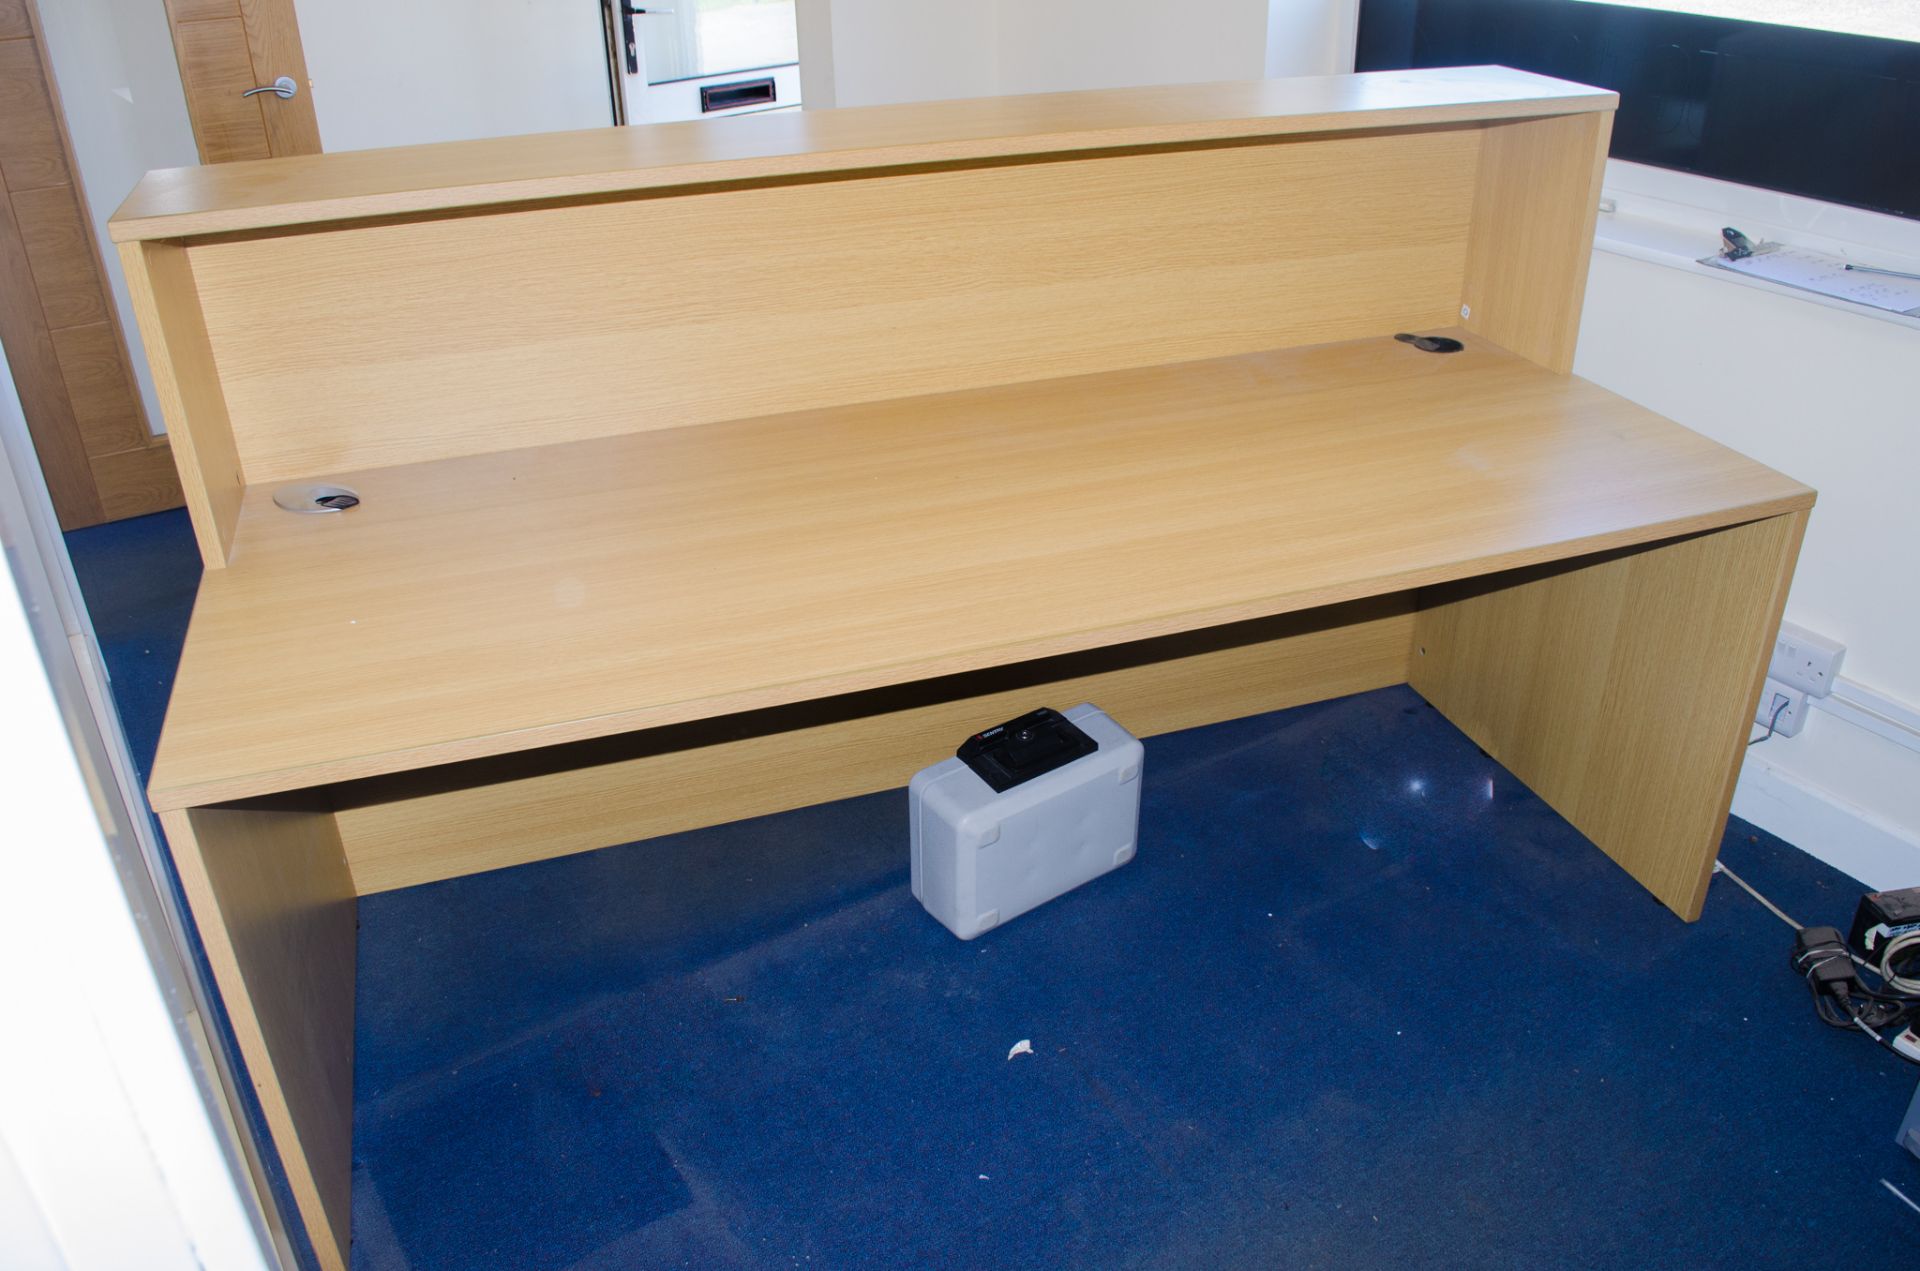 Reception Desk/Counter unit Dimensions: 180cm W, 90cm D, 70cm H